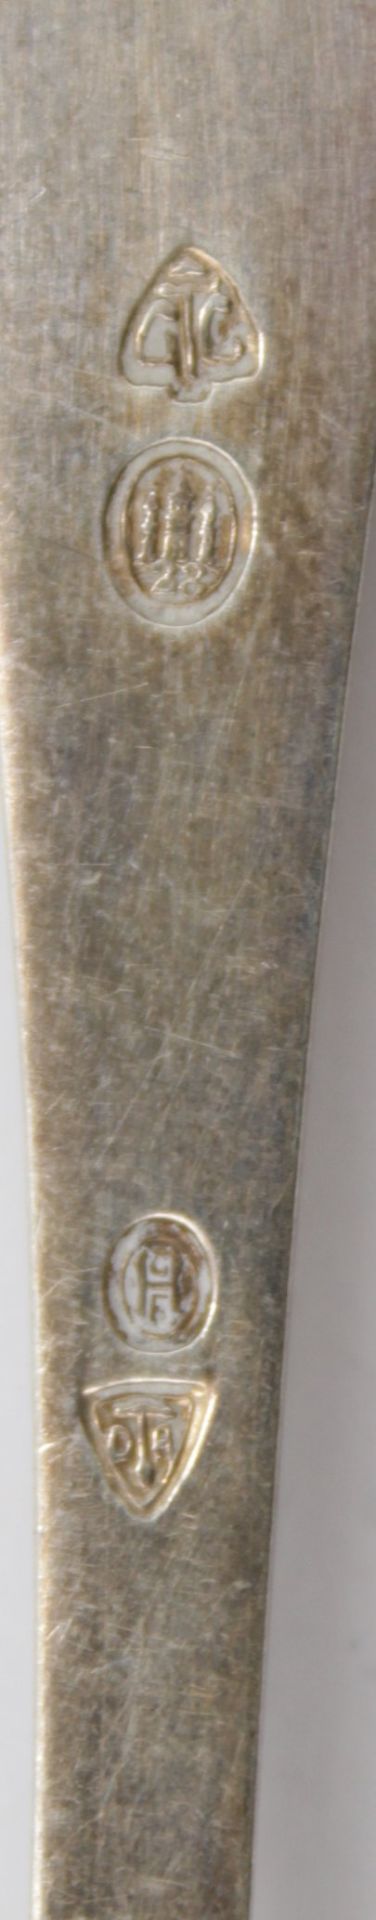 kl. Saucenkelle, Silber, Dänemark 1928, Hammerschlag, 20gr., L-13cm. - Bild 3 aus 3